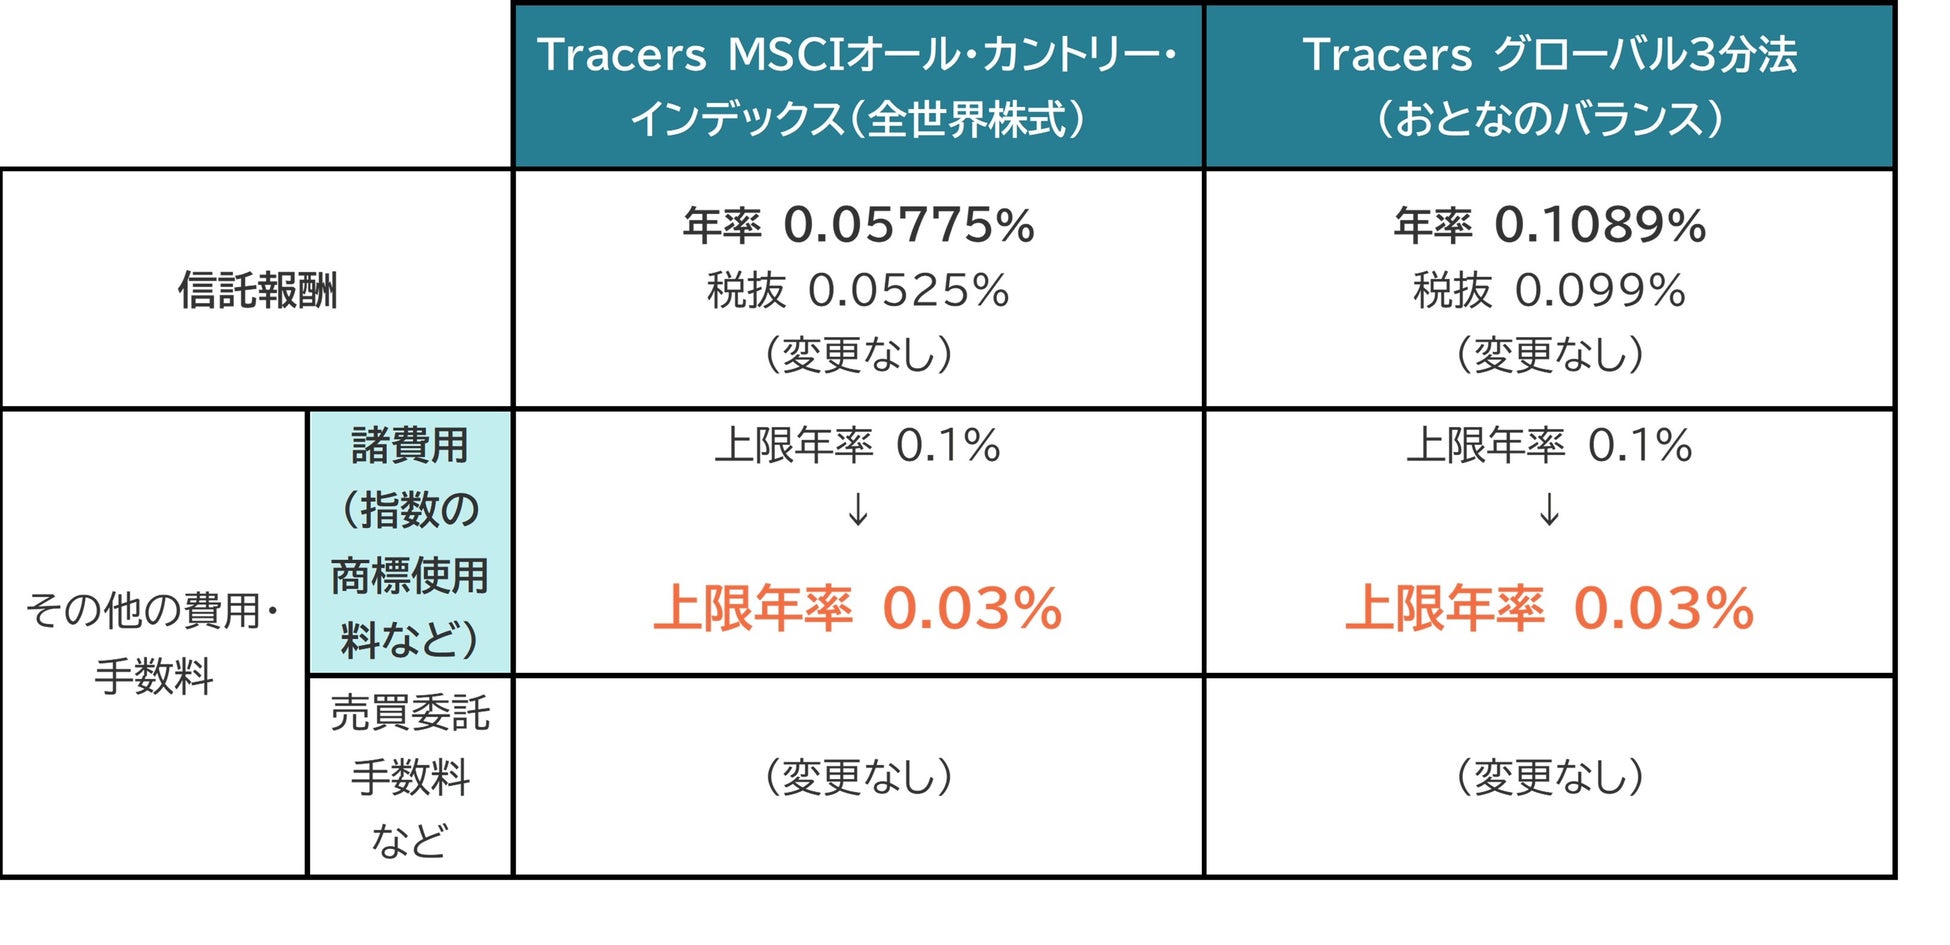 【日興アセットマネジメント】「Tracers MSCIオール・カントリー・インデックス（全世界株式）」「Tracers グローバル3分法（おとなのバランス）」、「諸費用」の上限年率を引き下げ